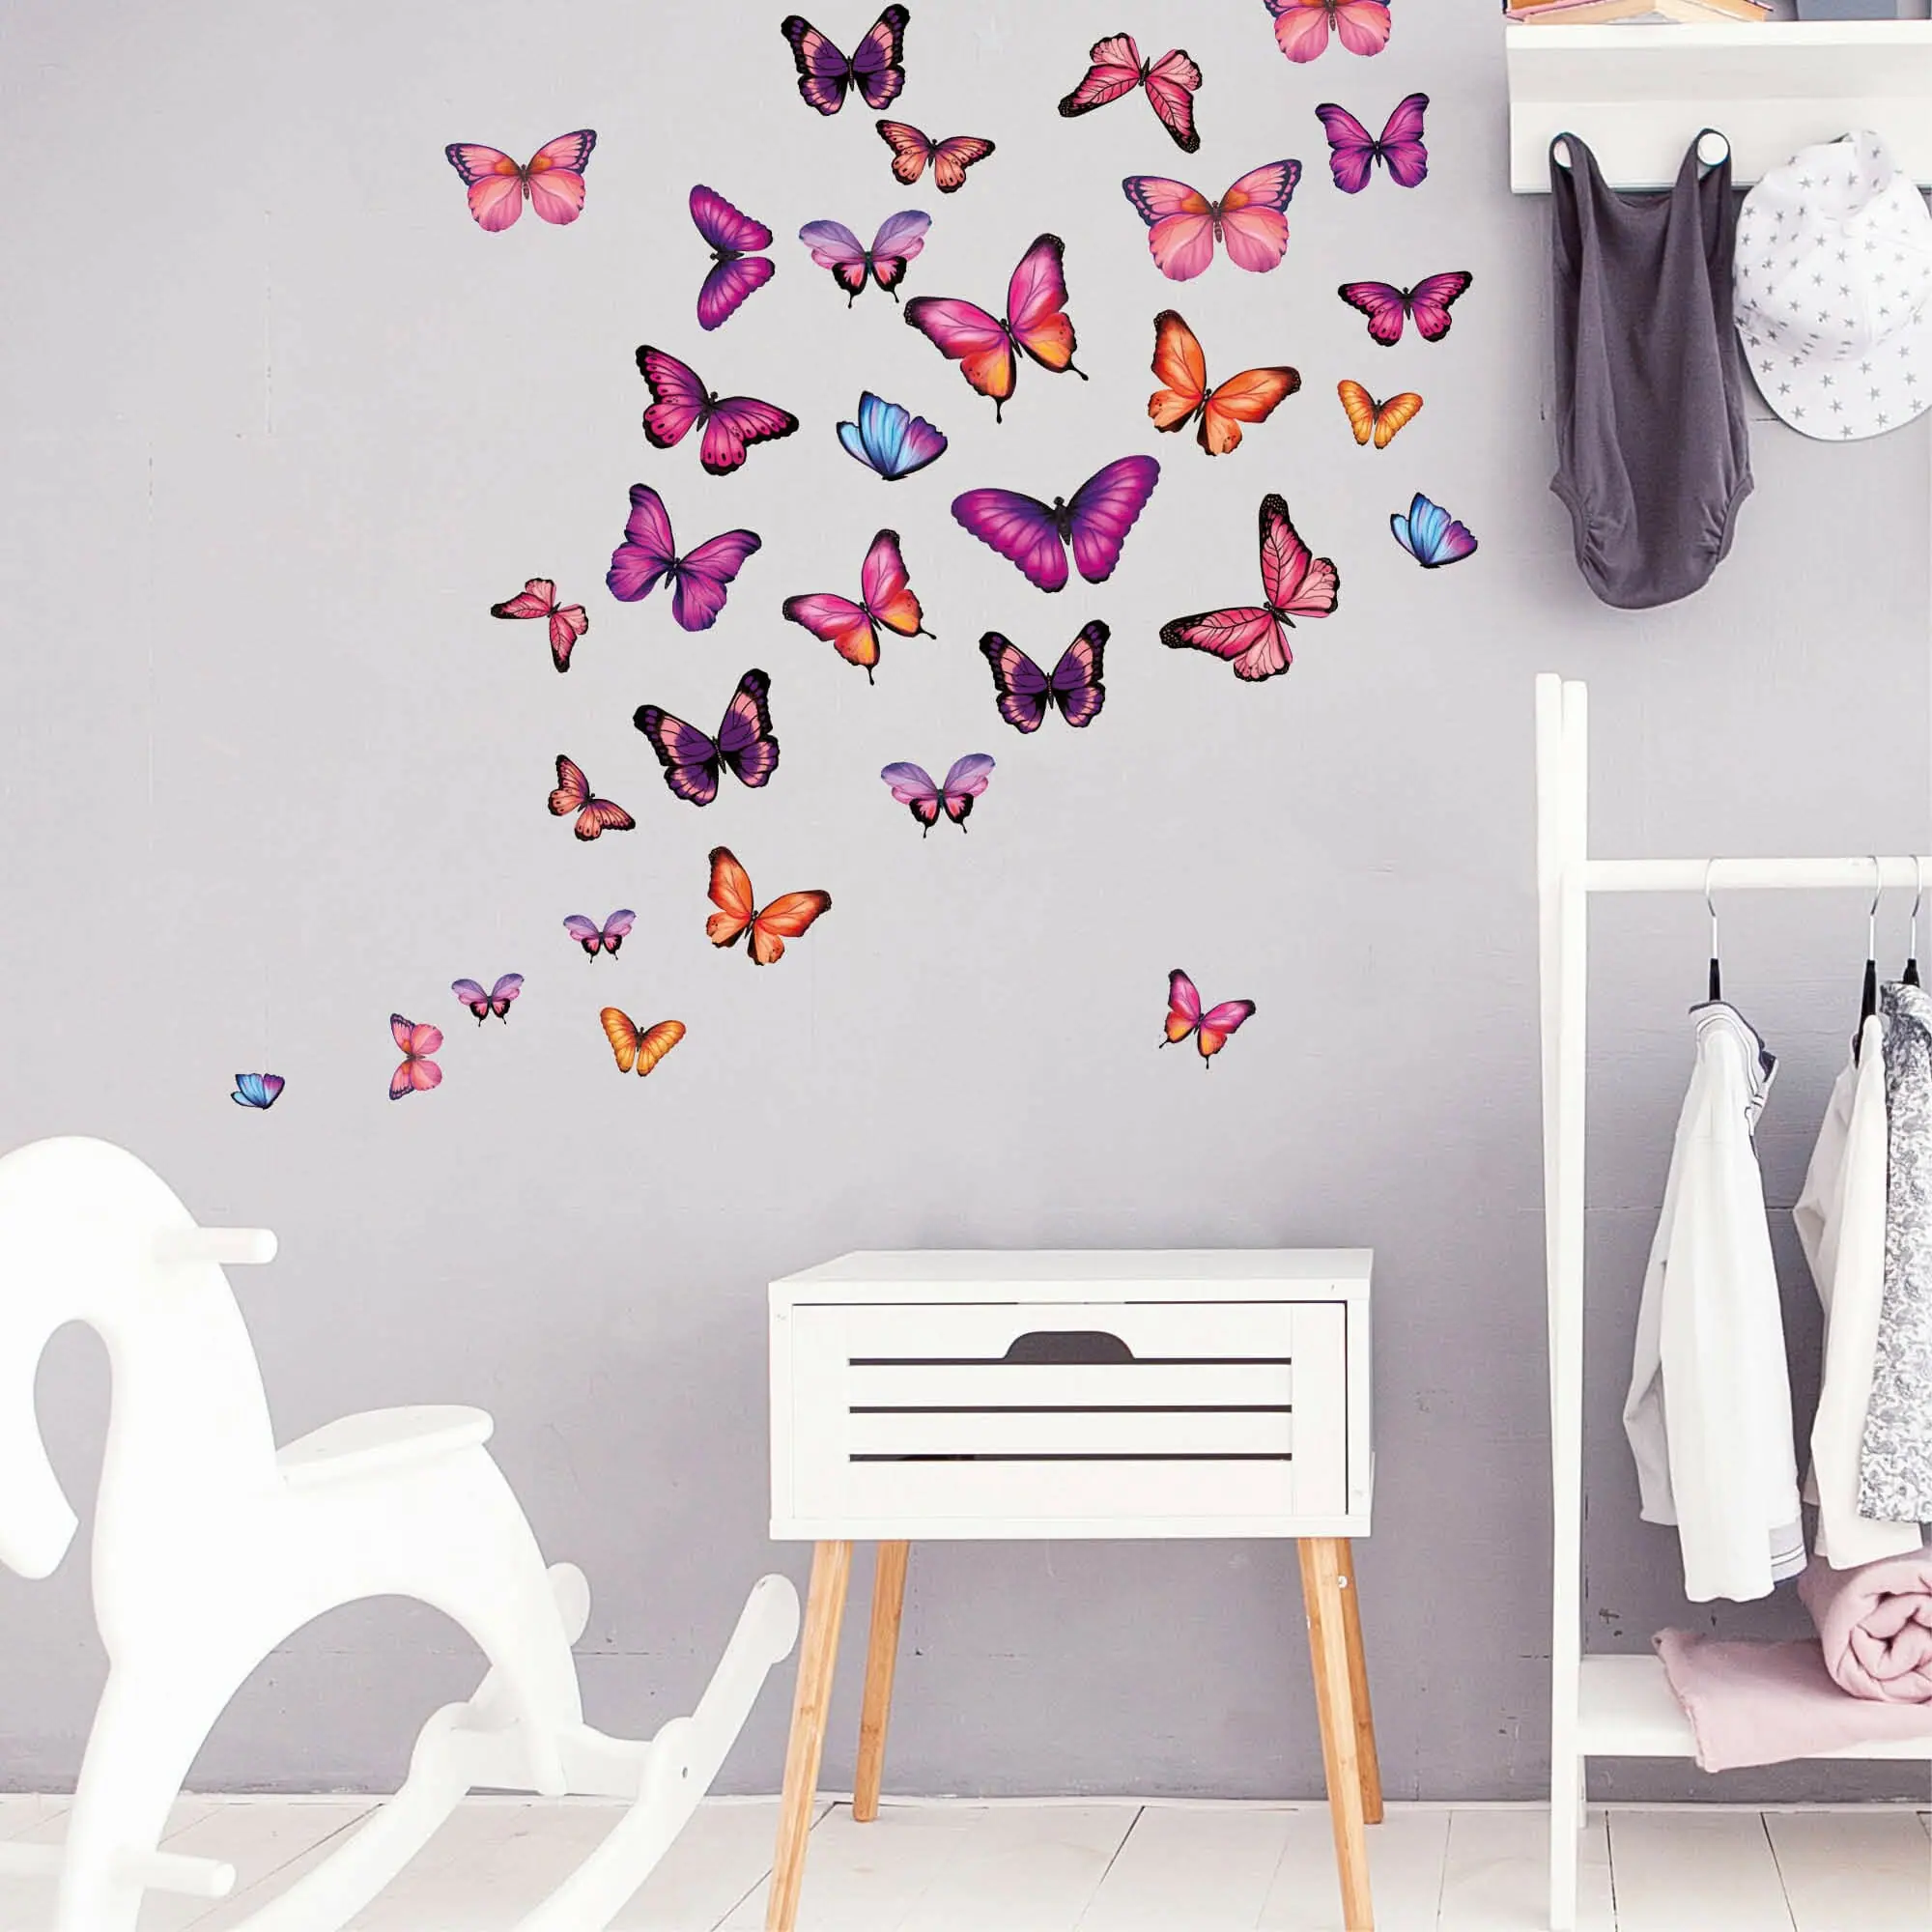 Wandtattoo Kinderzimmer Schmetterlinge in unterschiedlichen Rosa Tönen,  Kinderzimmerdeko, Babyzimmer | Wandtattoo Loft